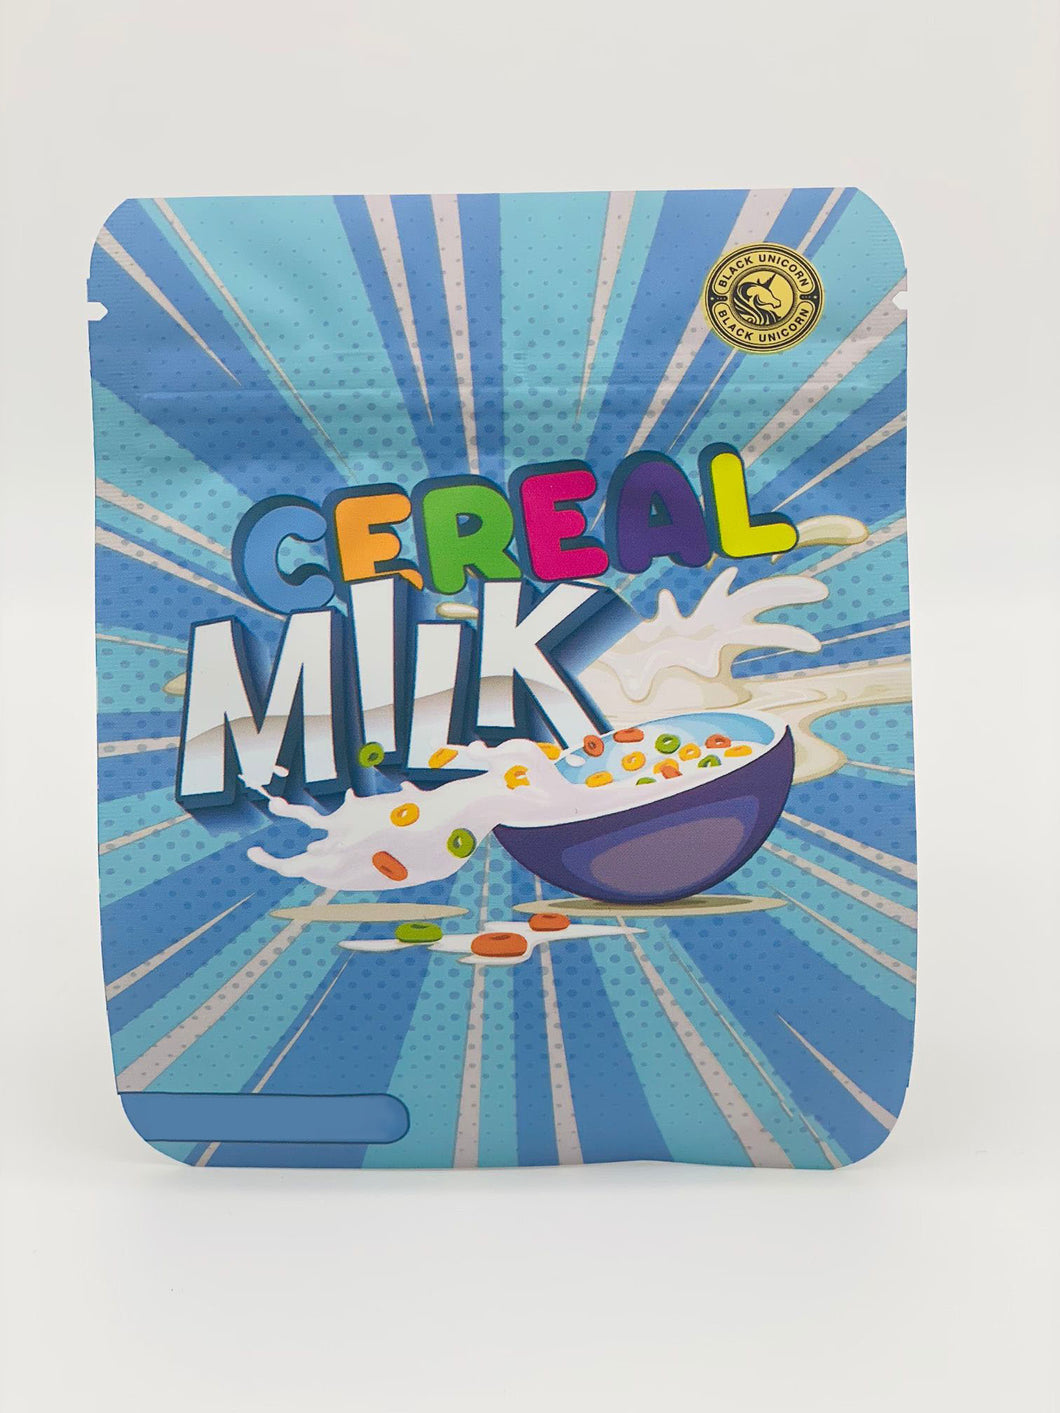 50 Cereal Milk 3.5-gram empty Mylar bags